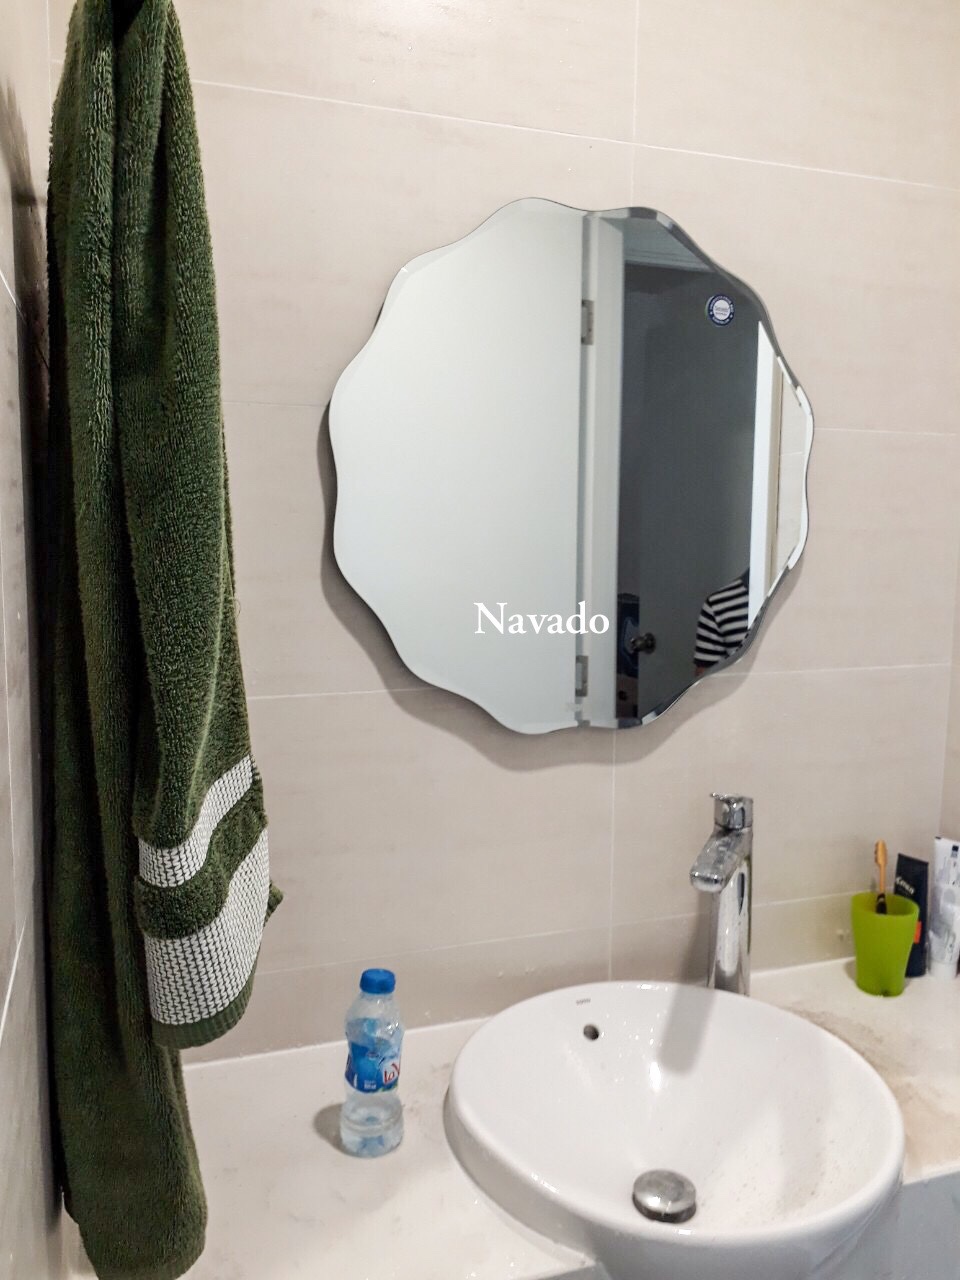 Gương tròn mài vát nghệ thuật Navado 2024: Đến với Navado, bạn không chỉ tìm được các sản phẩm nội thất chất lượng cao, mà còn được trải nghiệm thế giới nghệ thuật độc đáo. Gương tròn mài vát nghệ thuật của Navado sẽ khiến bạn trầm trồ ngắm nhìn vẻ đẹp tinh tế được tạo nên từ đường nét tinh tế và sự tinh tế từng chi tiết. Điểm nhấn ấn tượng trong không gian của bạn.